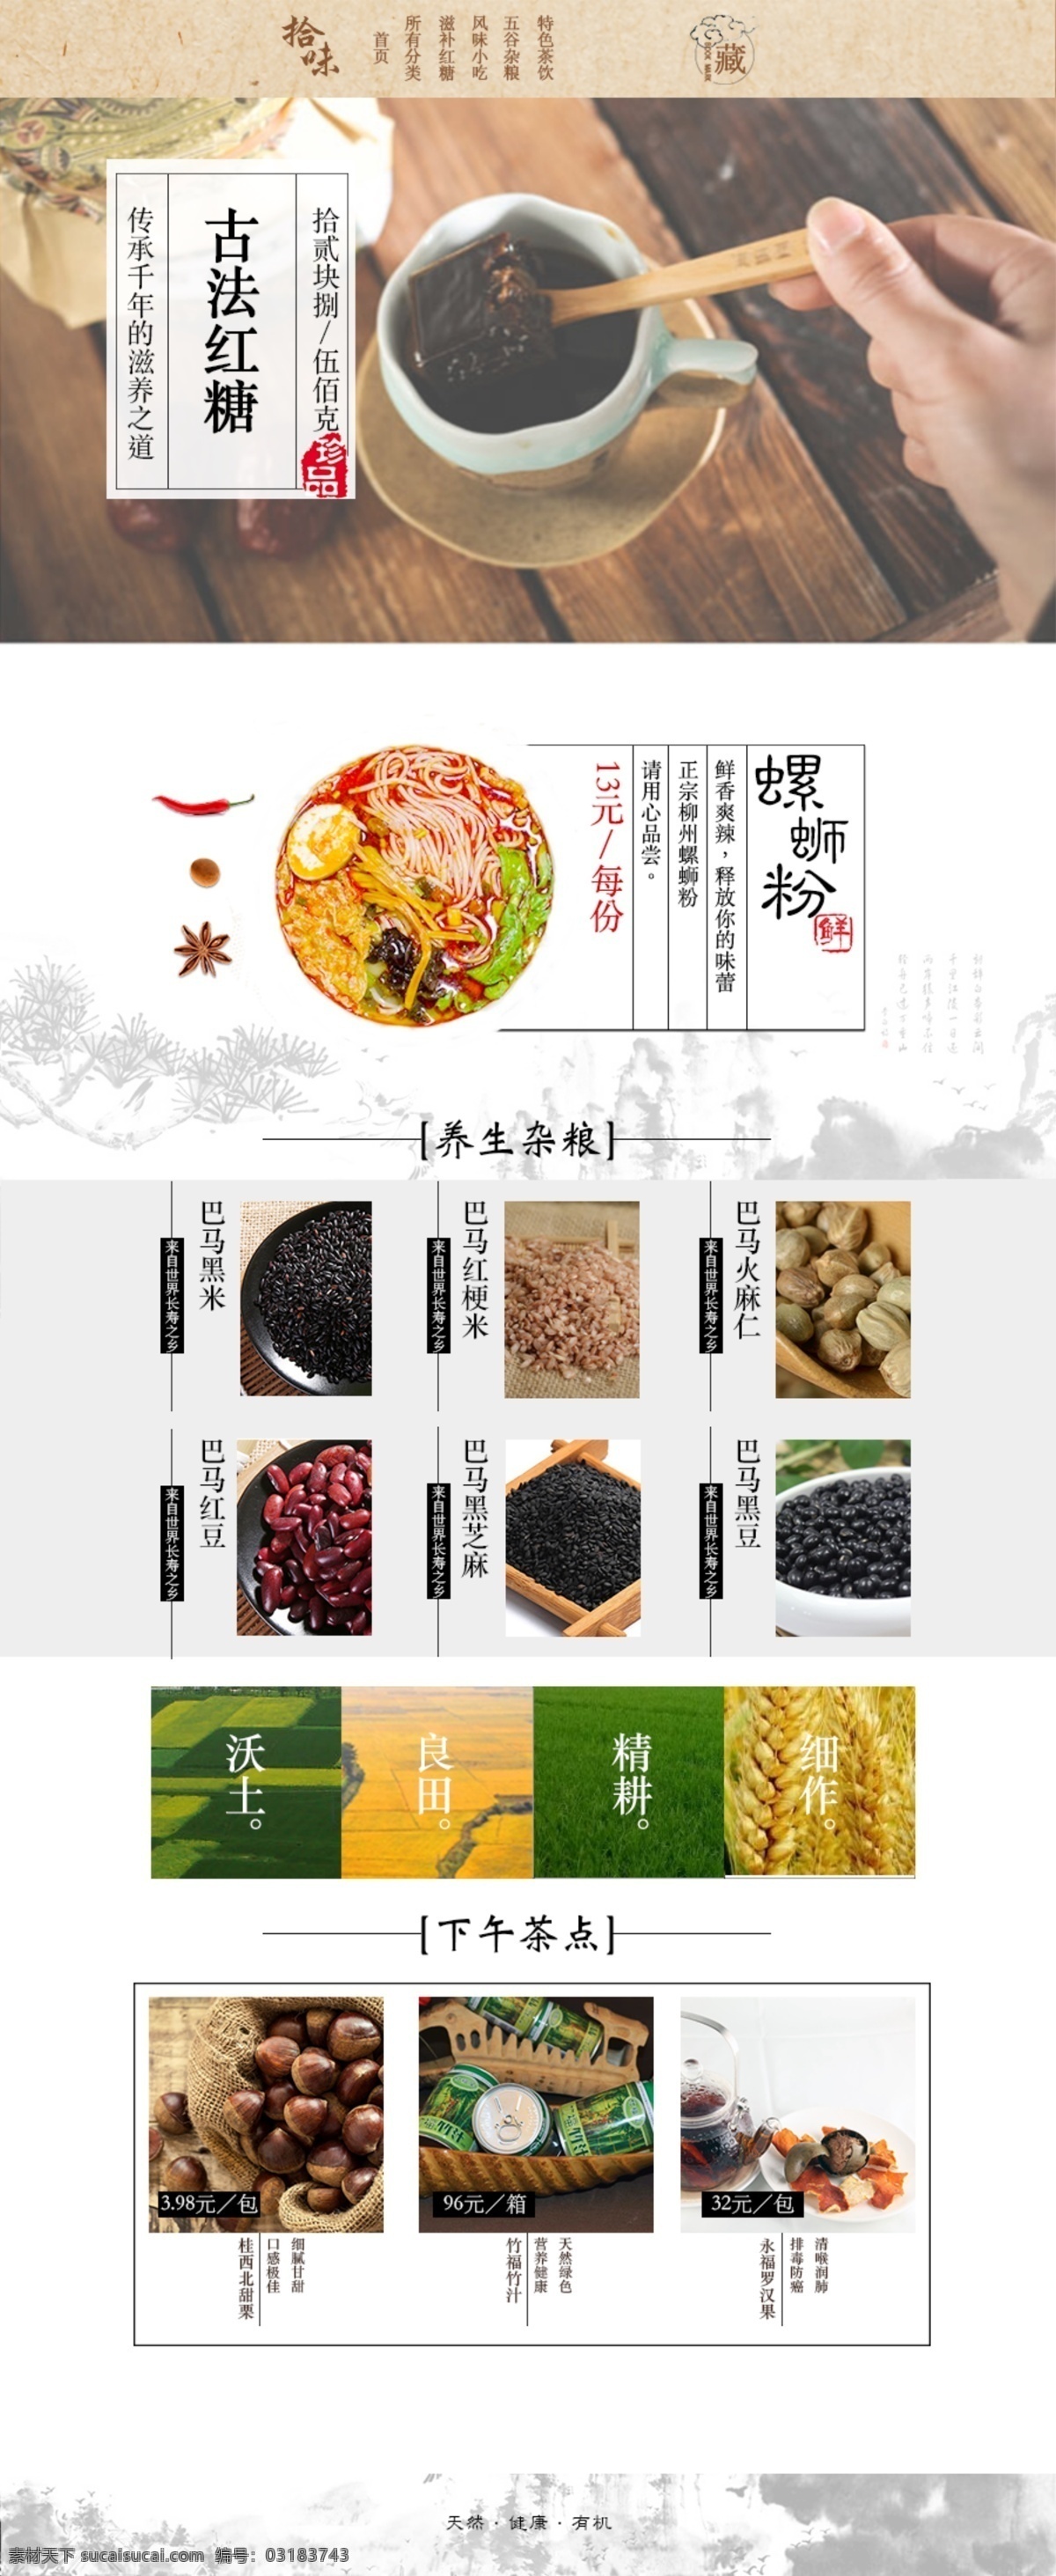 食品首页 食品 首页 详情 中国风 白色